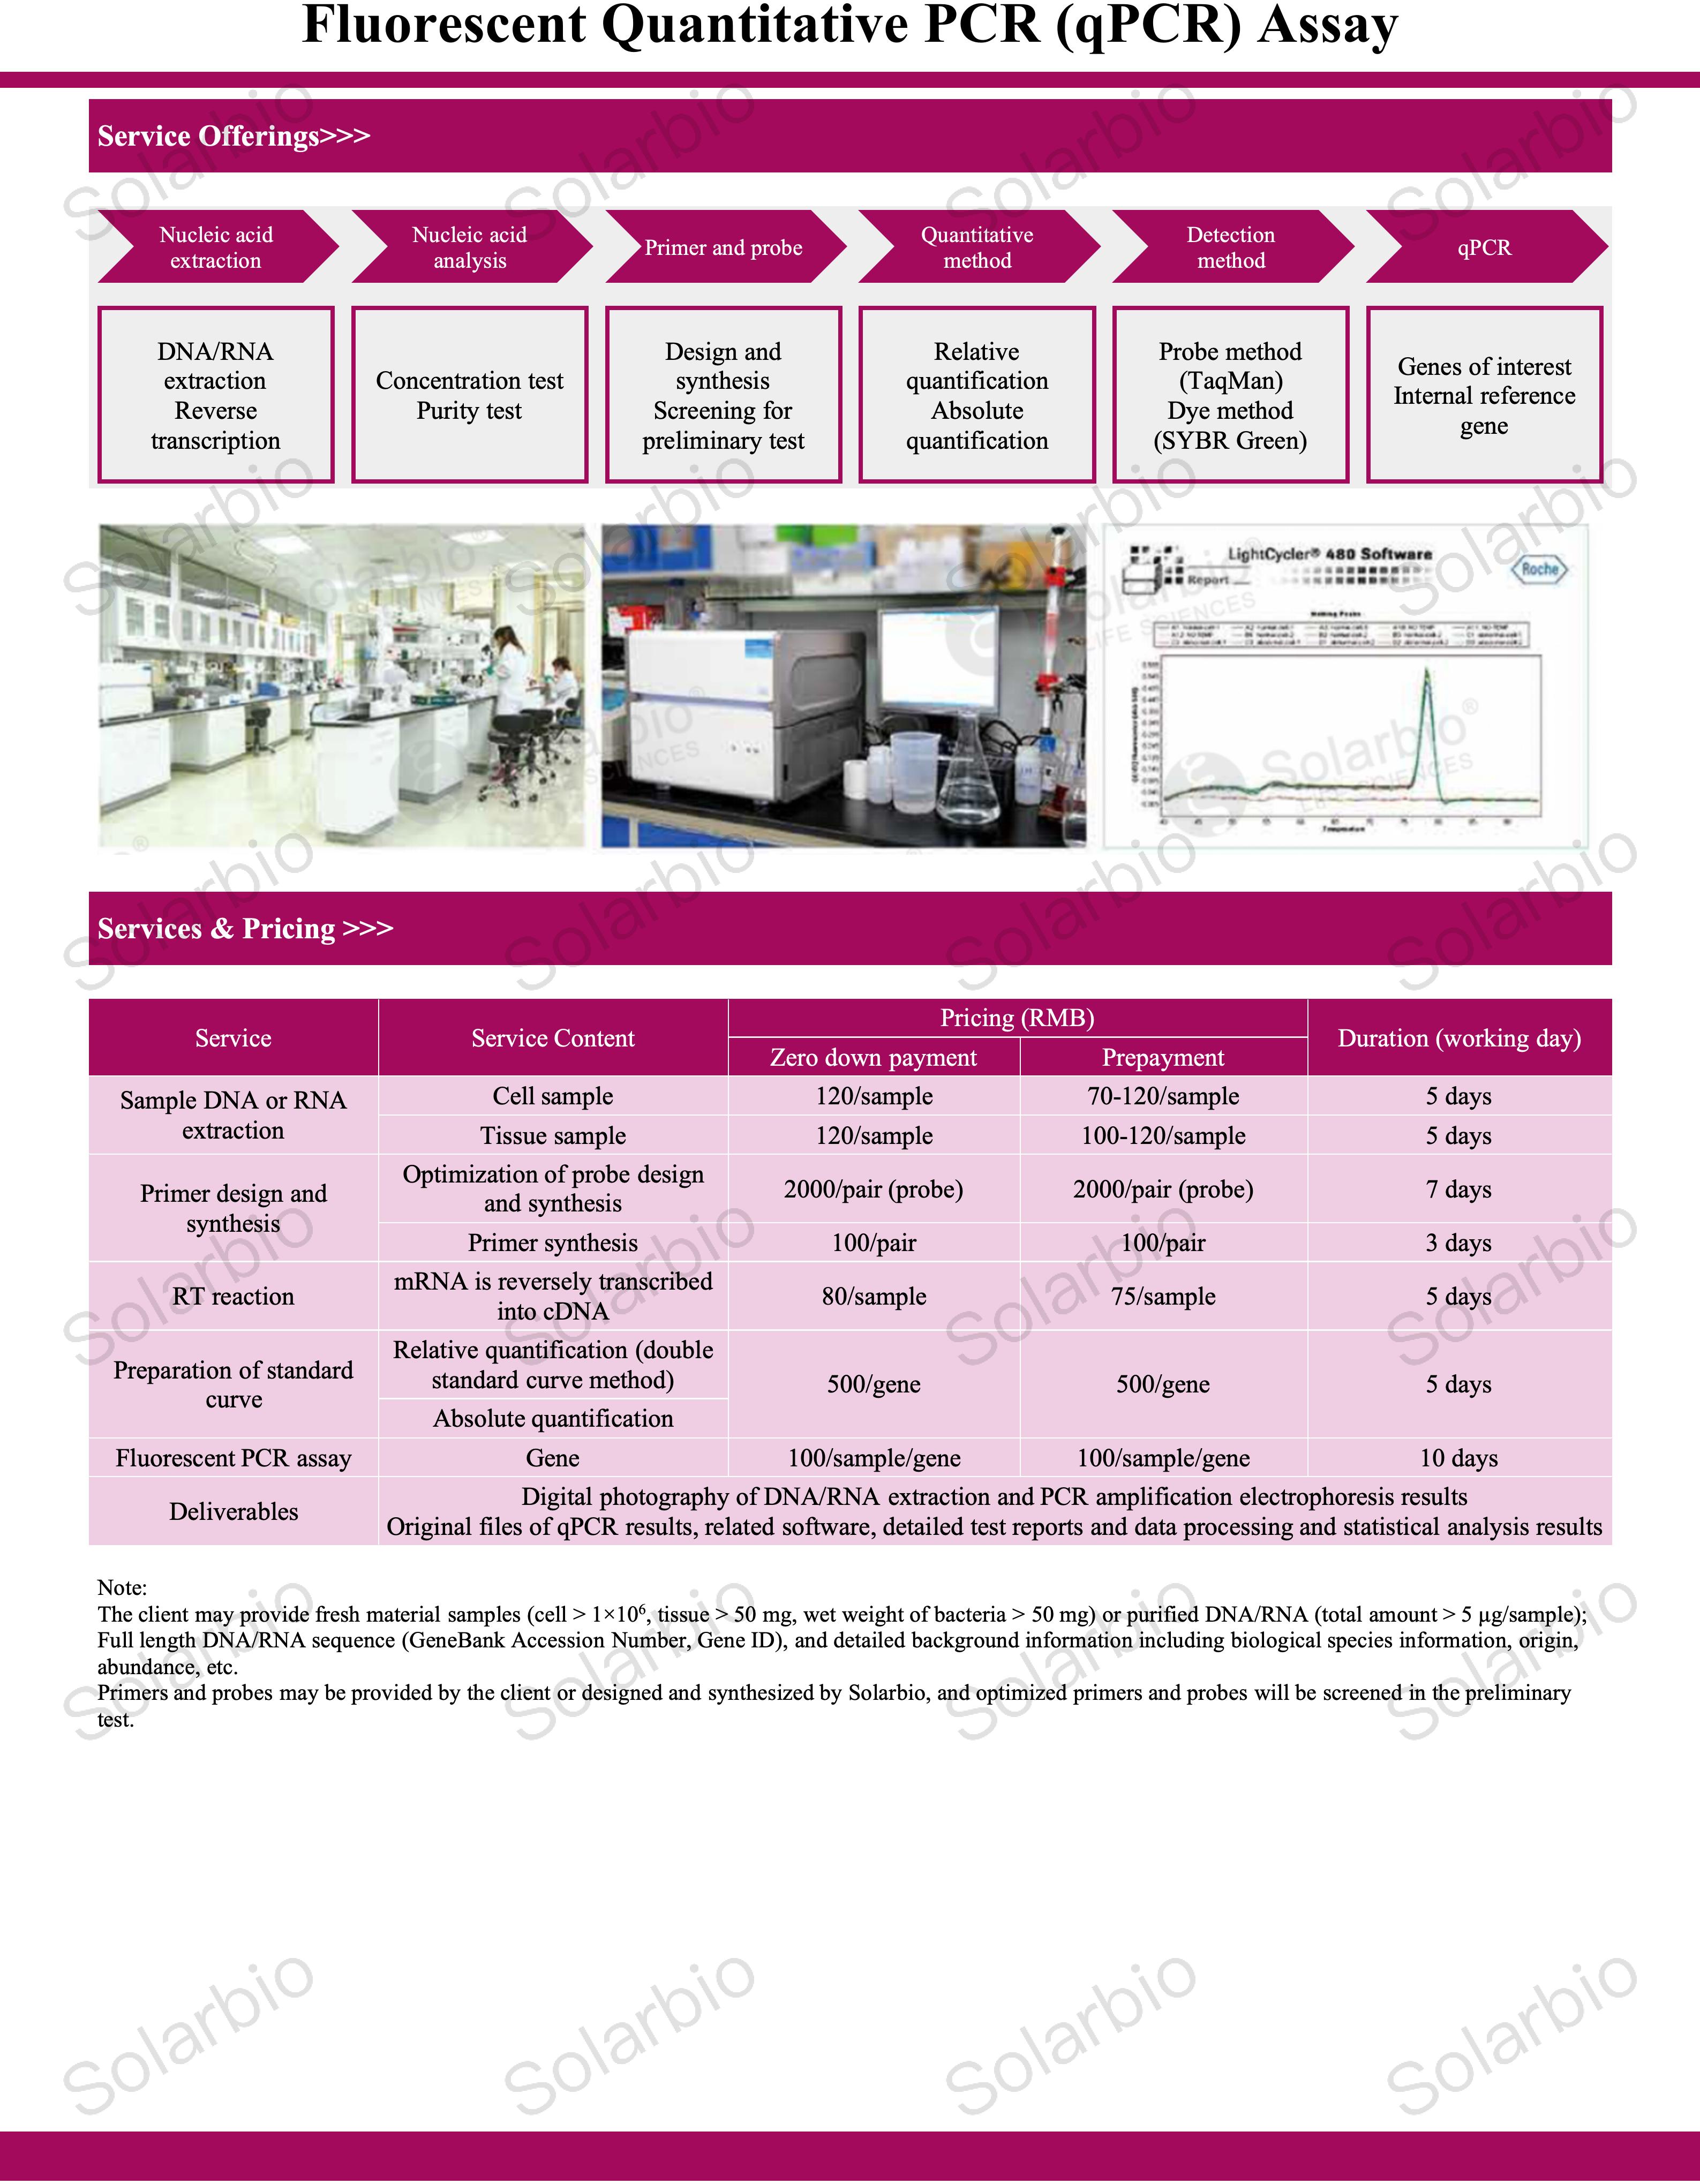 技术服务—荧光定量PCR（qPCR）检测_01.jpg